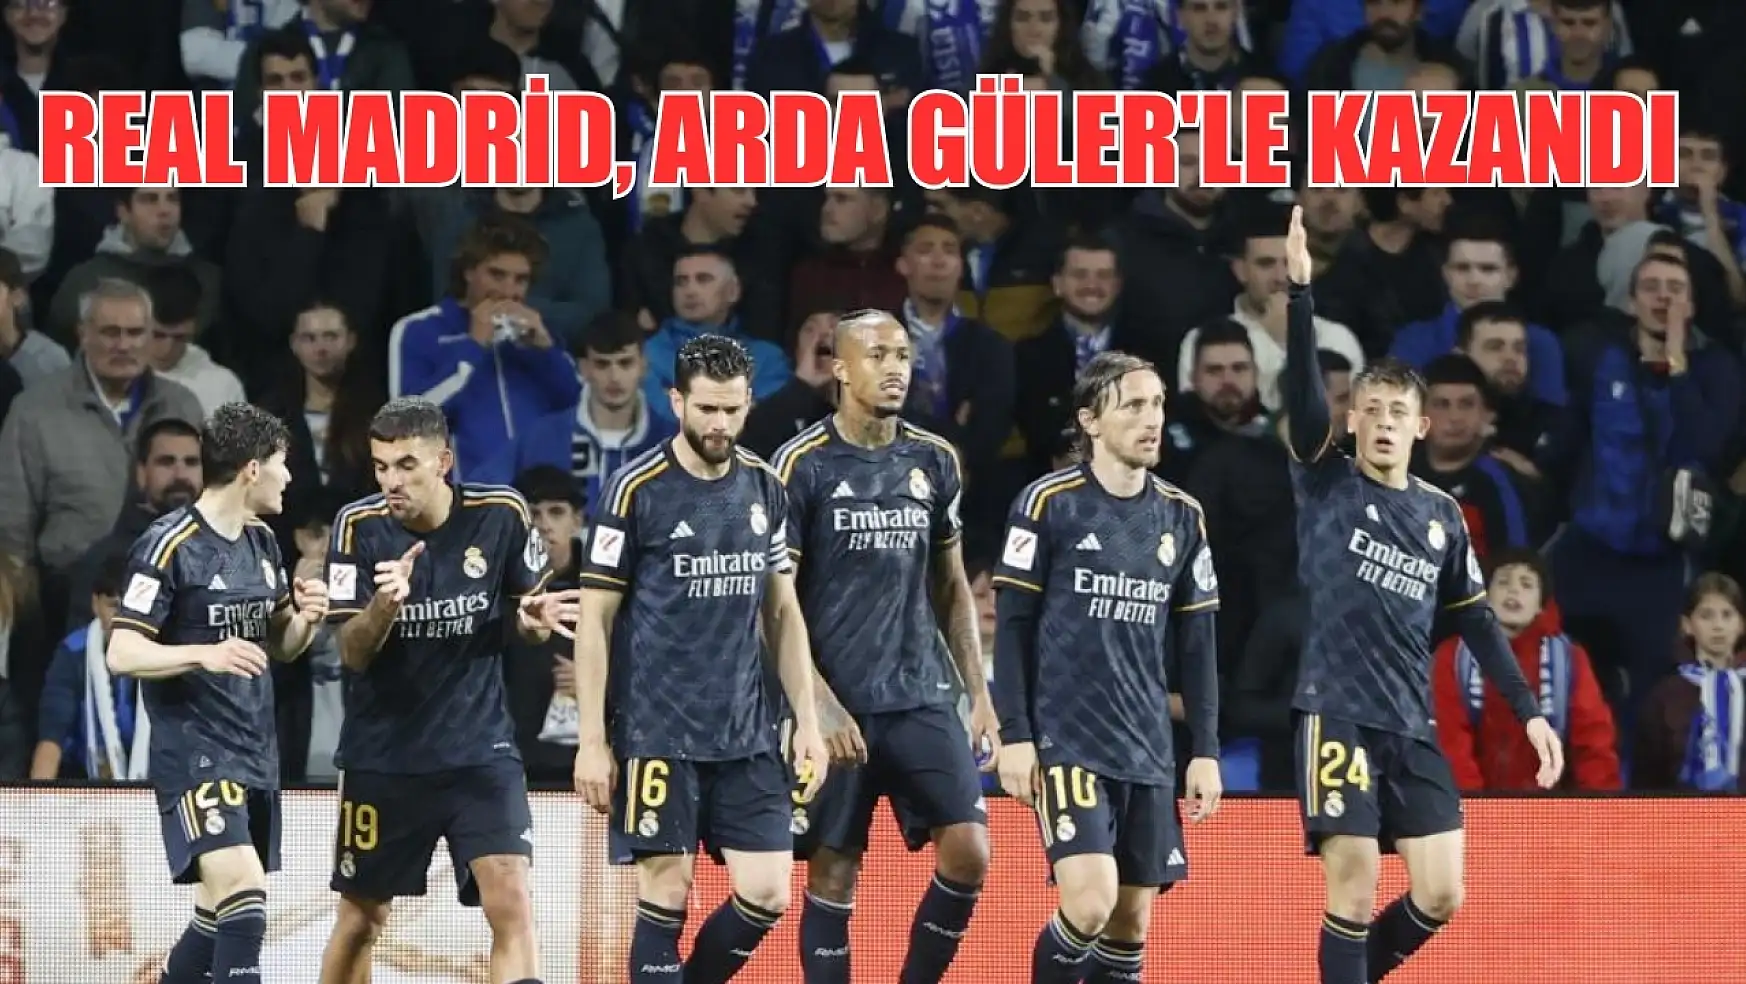 Real Madrid, Arda Güler'le kazandı